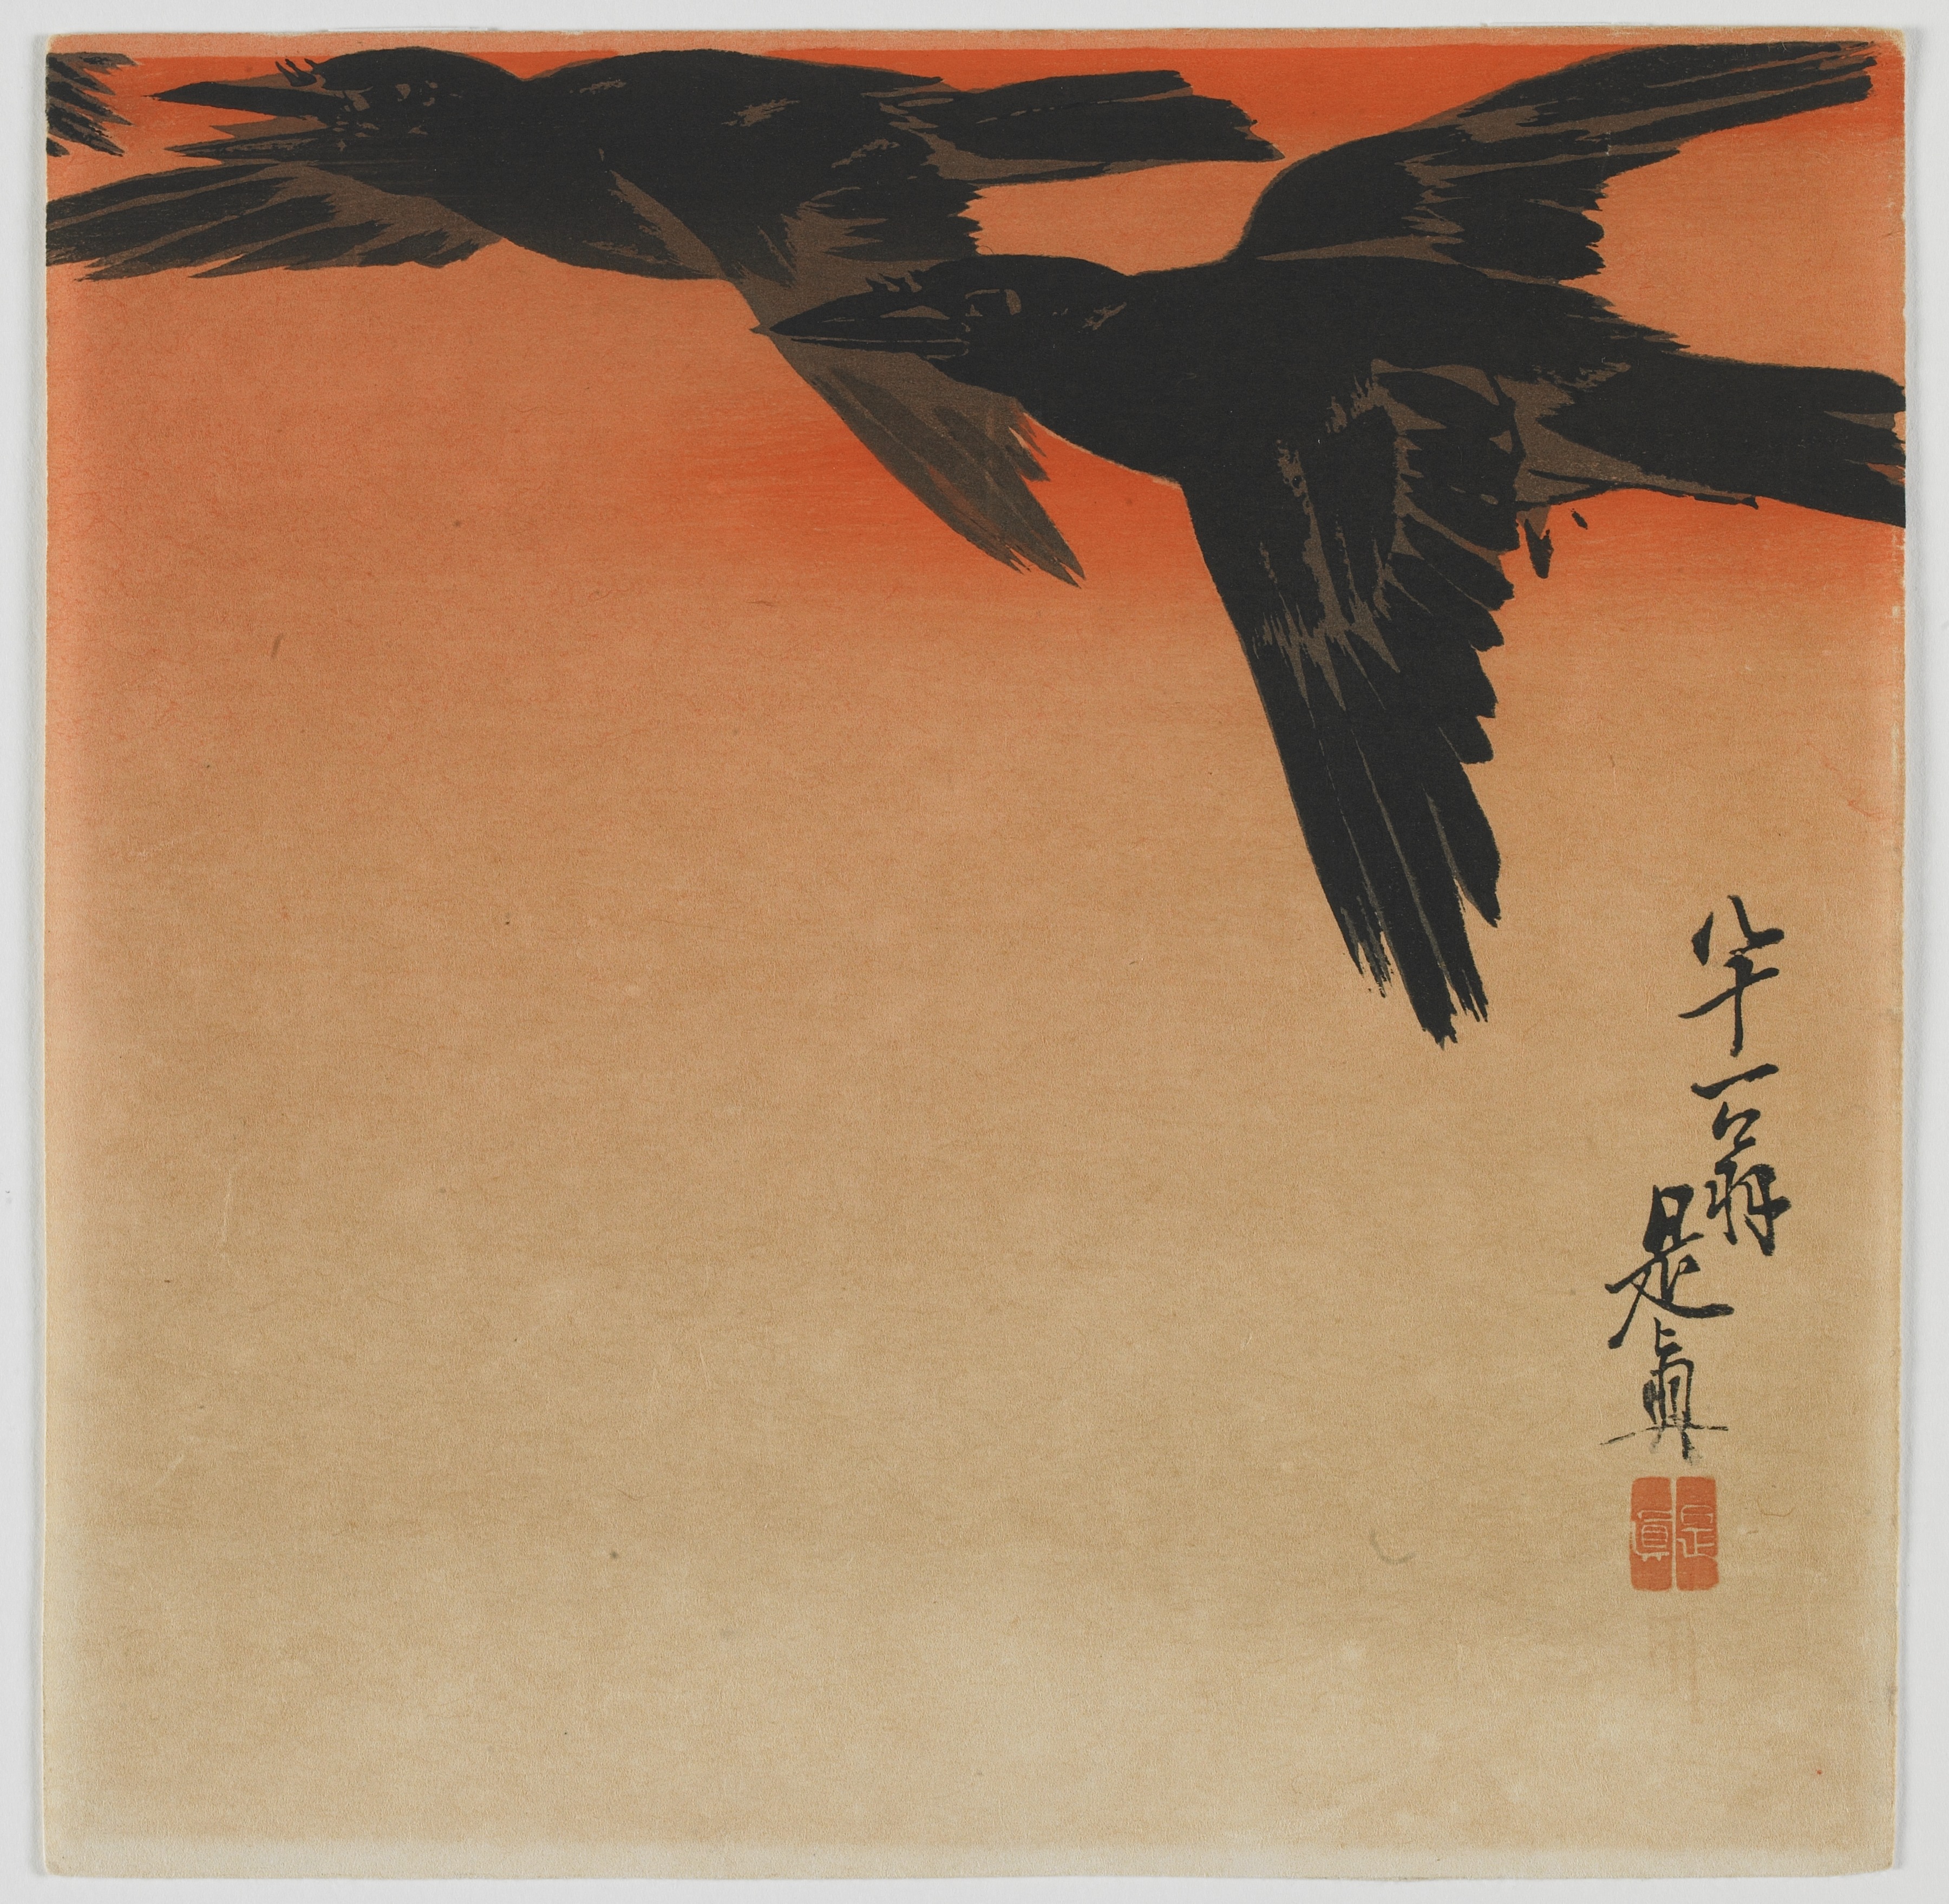 黃昏時的烏鴉 by Shibata Zeshin - 19世紀 - 23.8 x 23.9 cm 